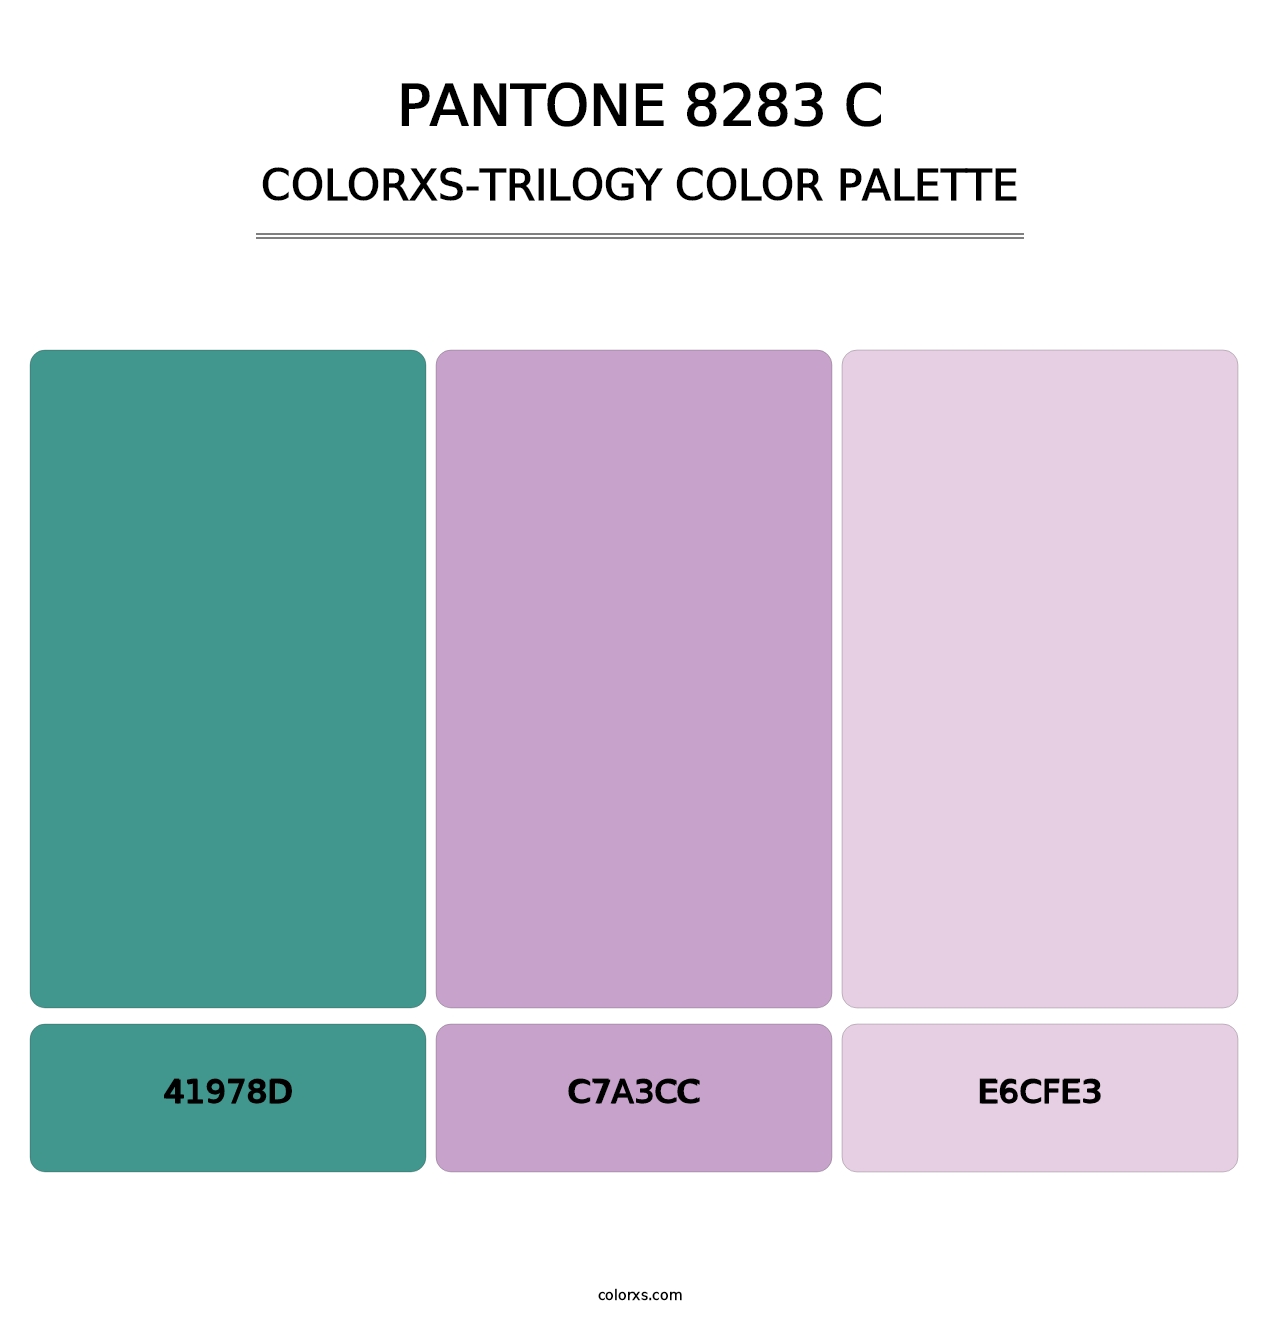 PANTONE 8283 C - Colorxs Trilogy Palette